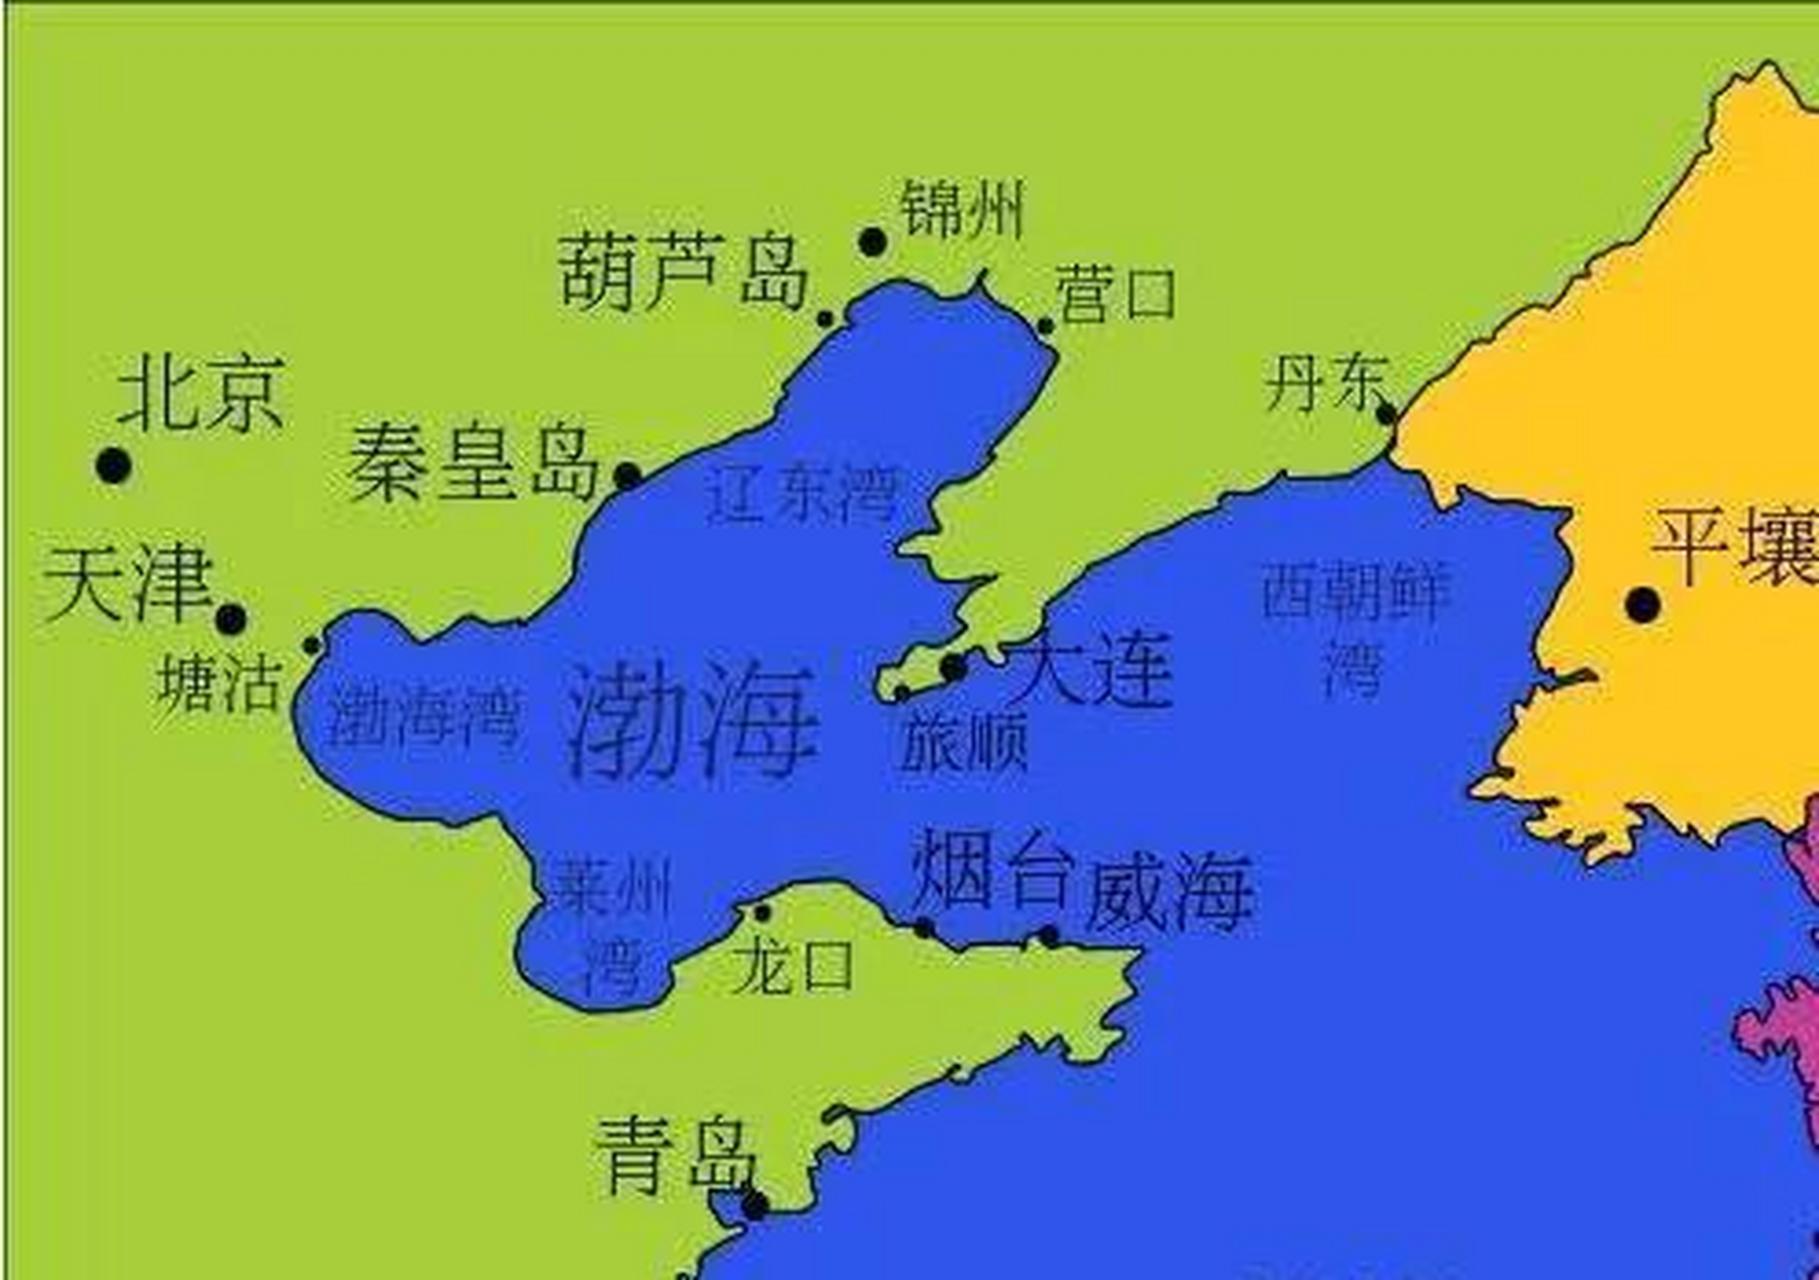 强烈建议国家在渤海填海造陆,渤海平均深度18米,特别适合填海造陆,将